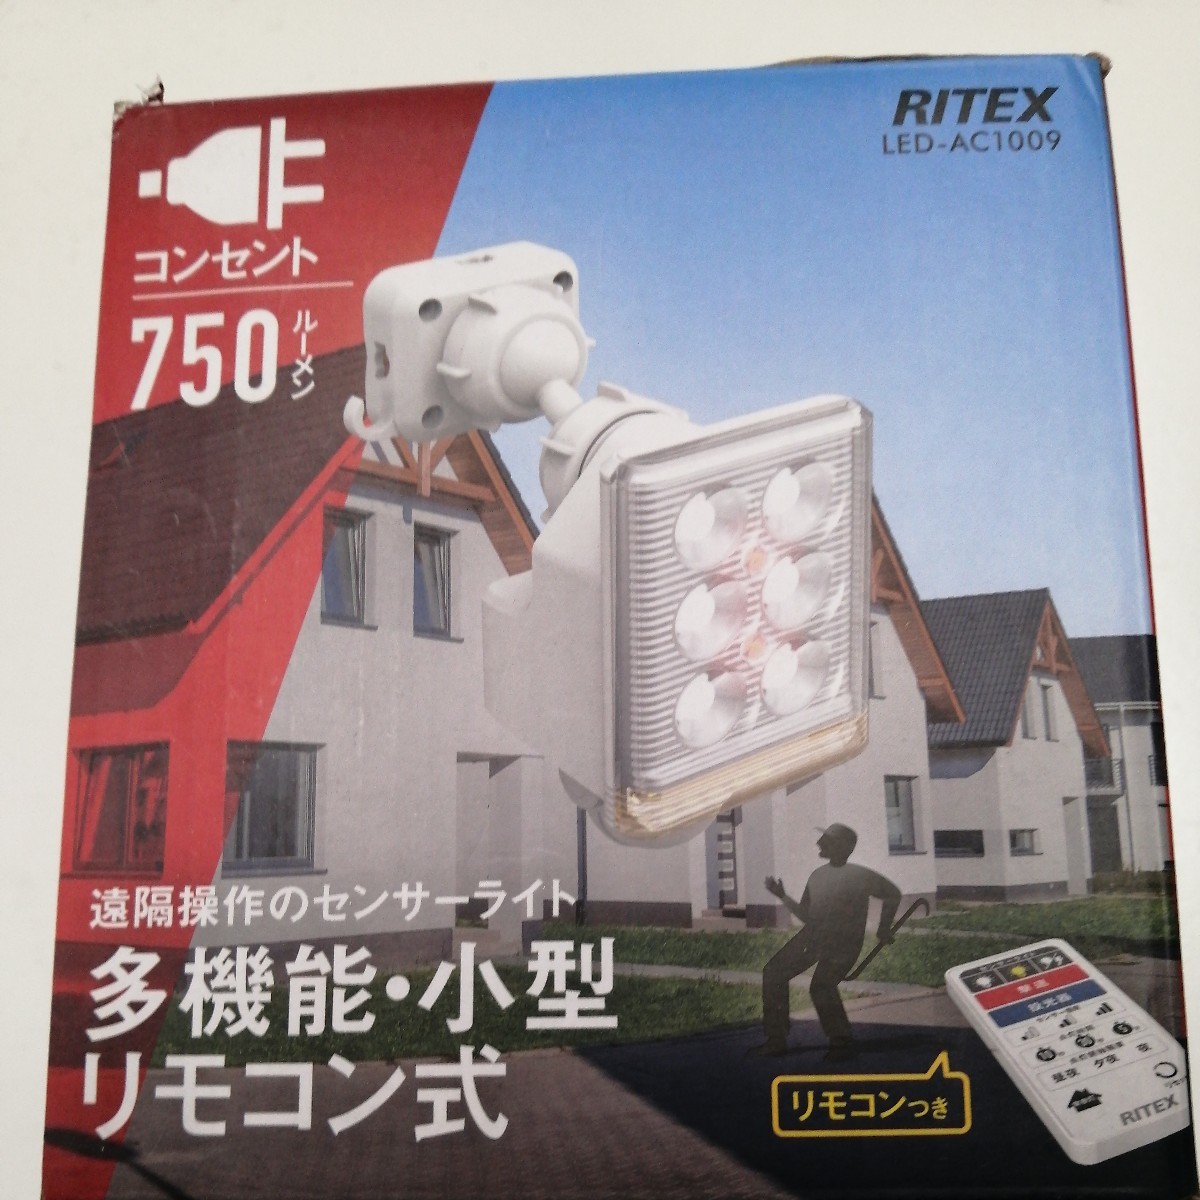 ムサシ 9W×1灯 フリーアーム式LEDセンサーライト リモコン付 LED-AC1009 屋内屋外用 (防雨タイプ IP44) 焦電型赤外線センサー RITEXの画像3